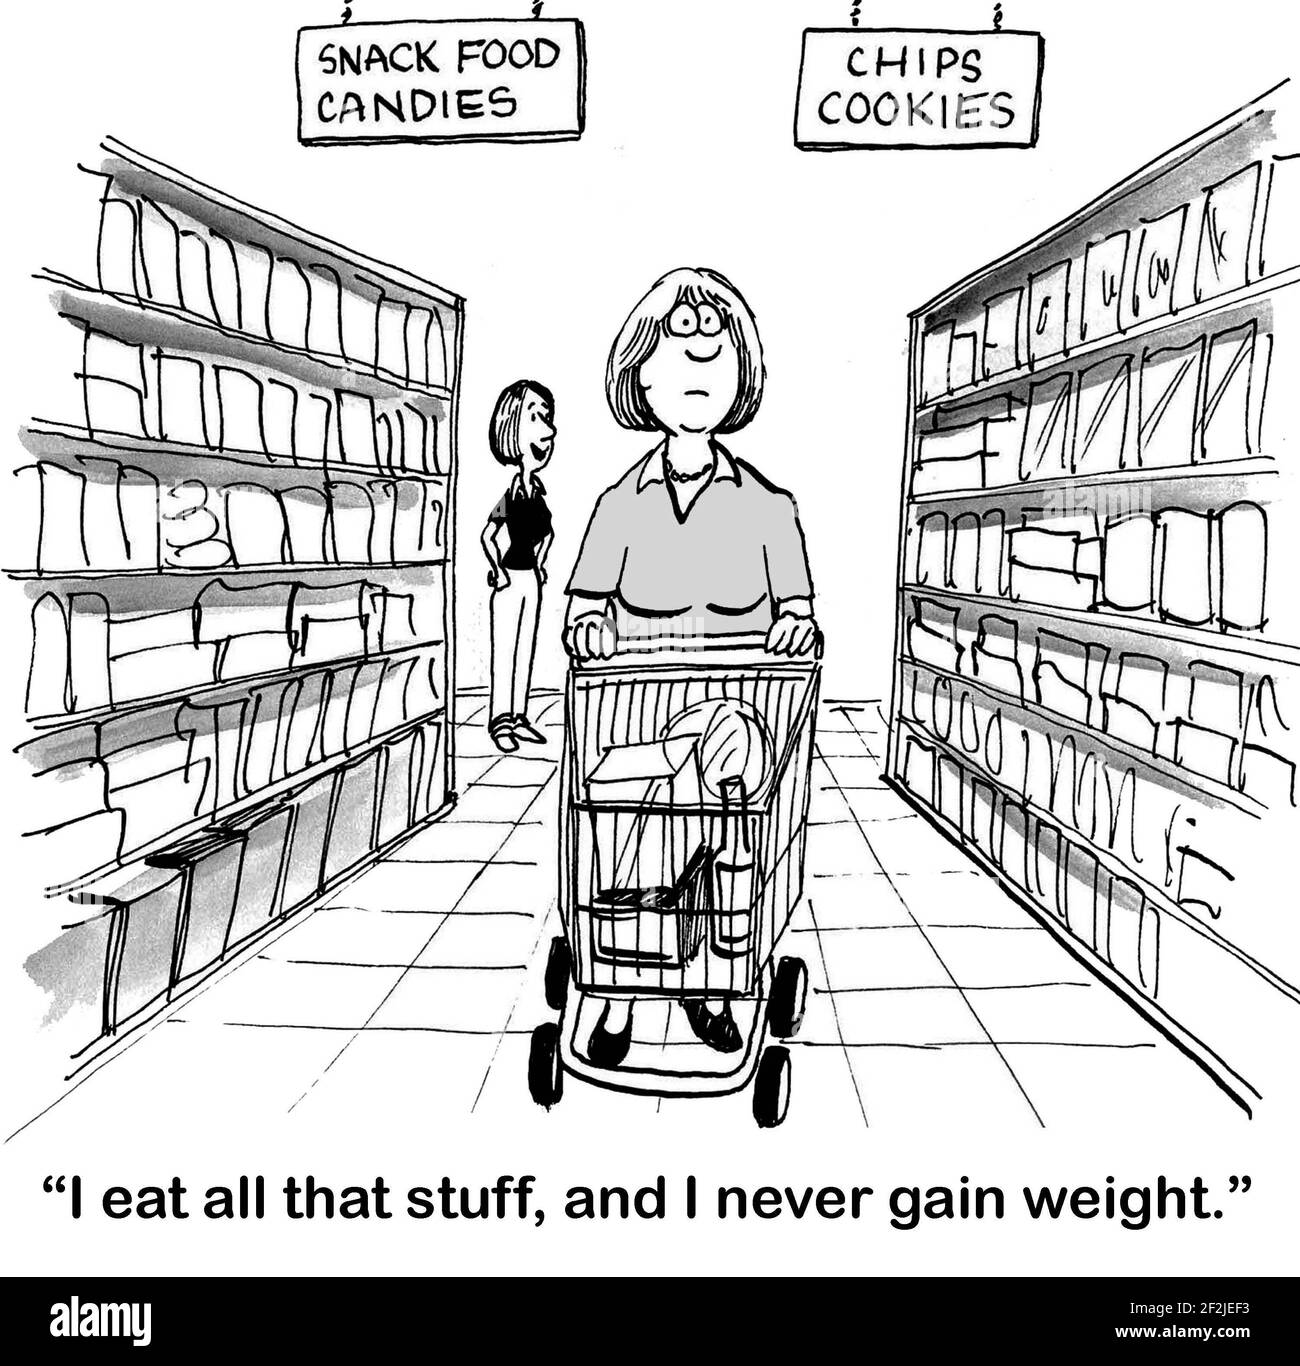 Frau Shopper wird gesagt, sie kann Junk-Food essen und nicht an Gewicht zunehmen. Stockfoto